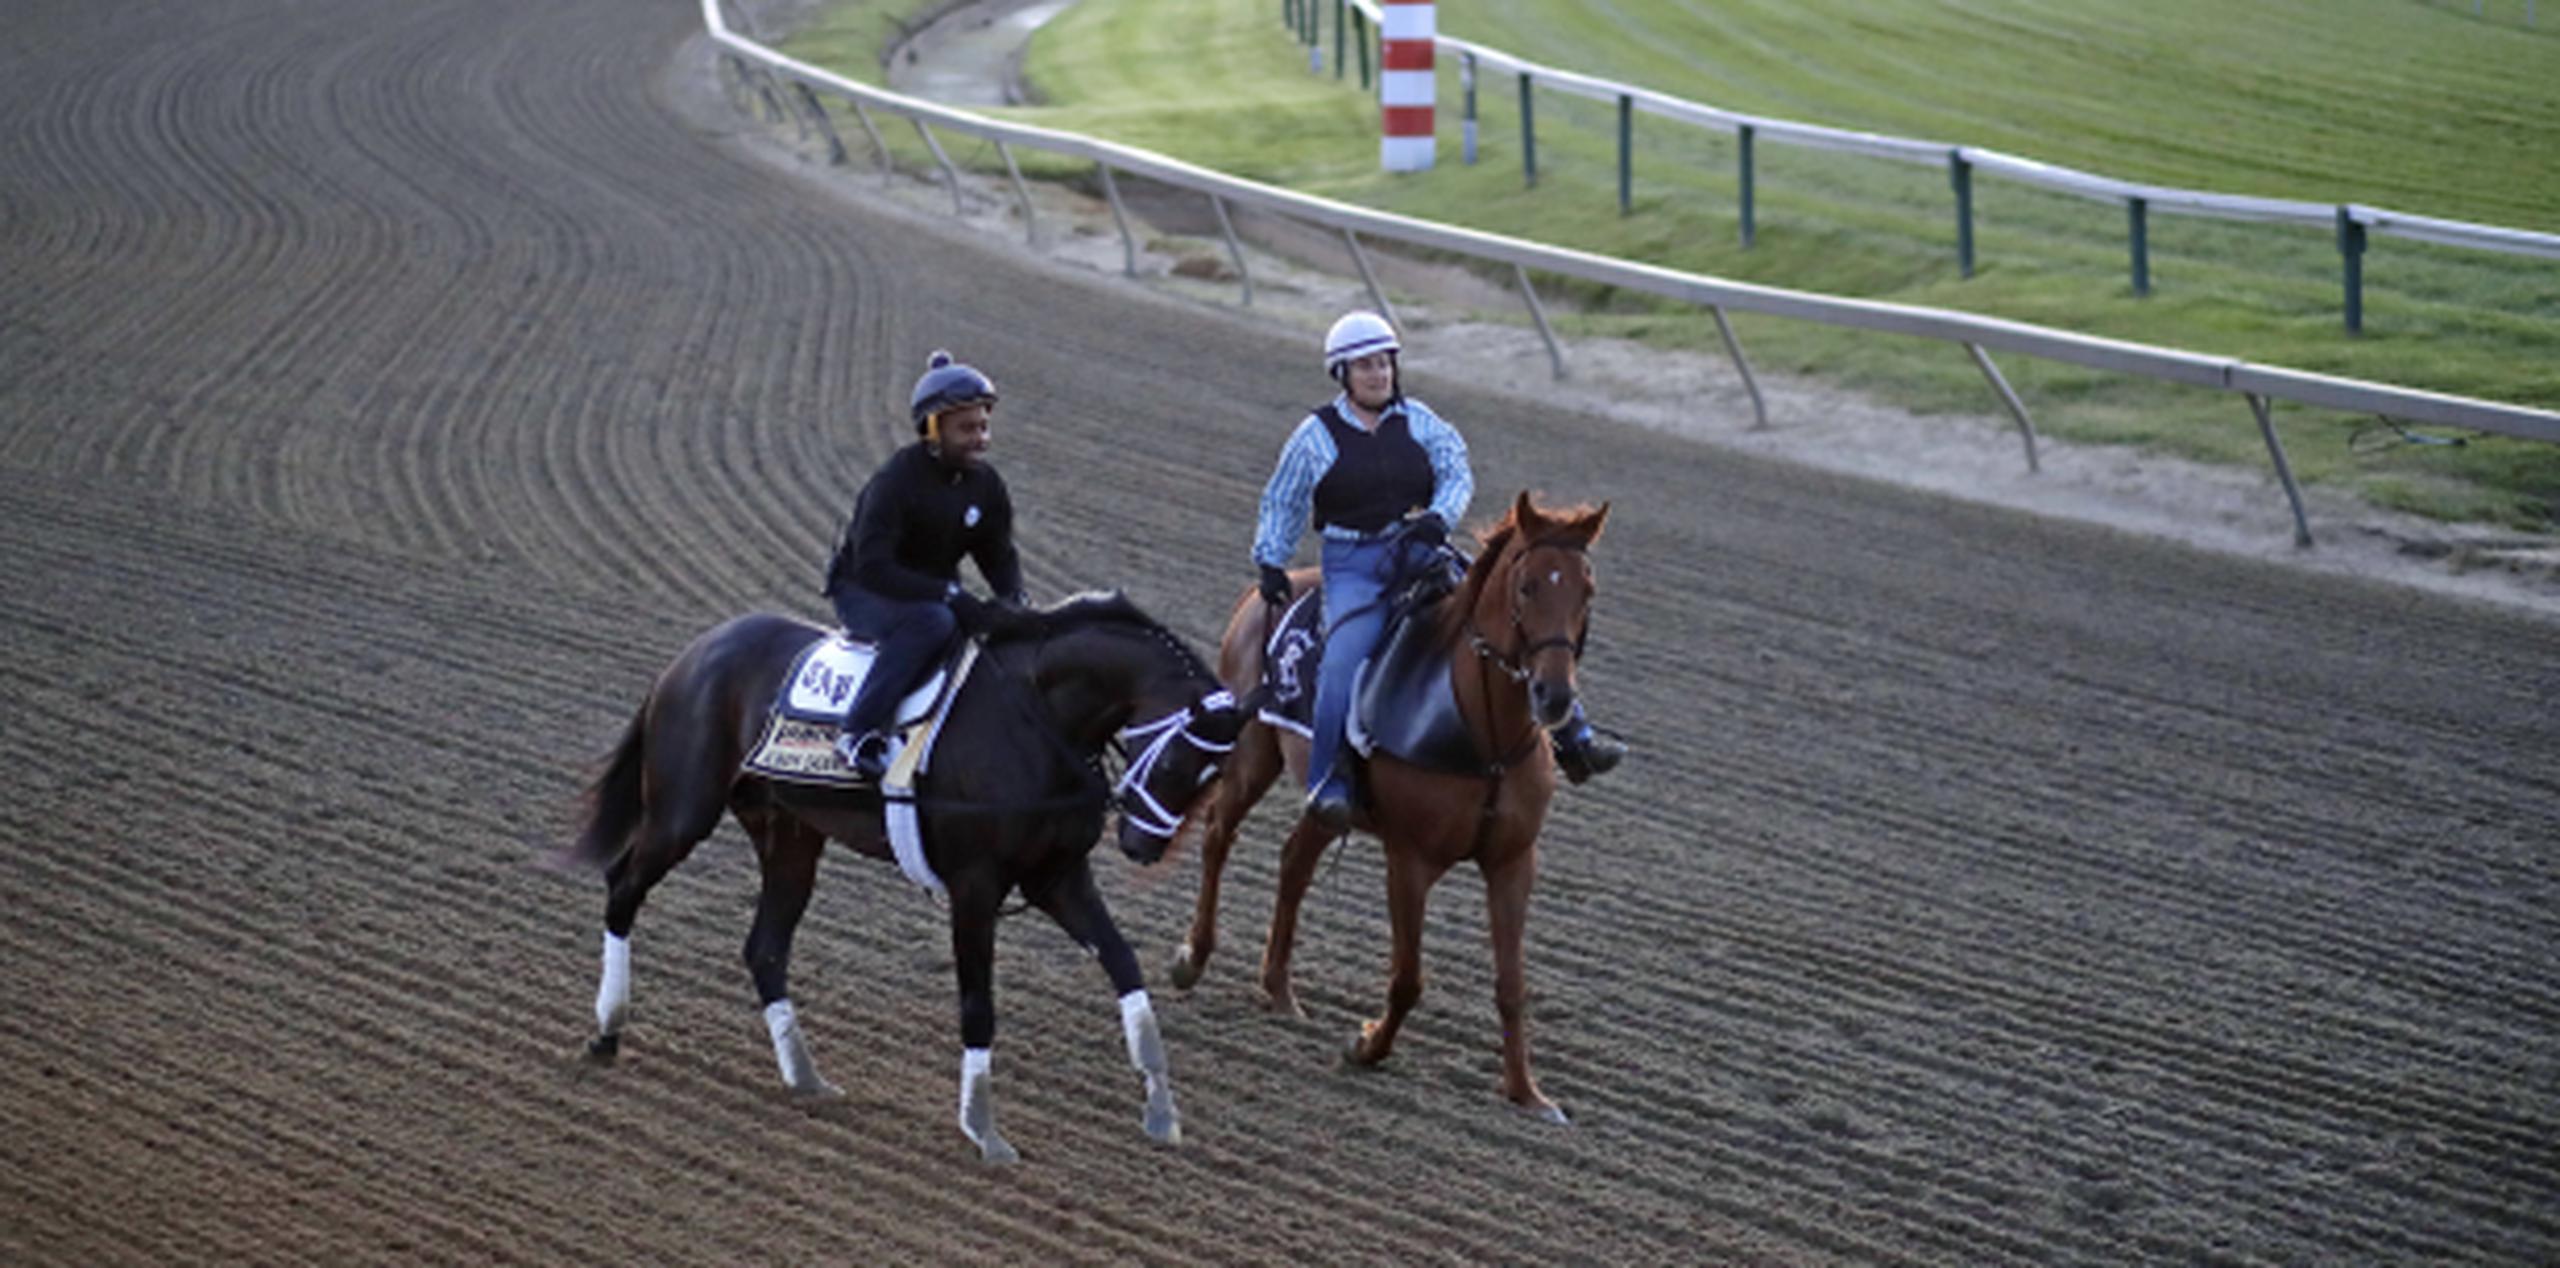 Always Dreaming, a la izquierda y montado por el jinete de entrenamiento Nick Bush, es guiado por un caballo guía a una sesión de entrenamiento ayer. (AP / Patrick Semansky)